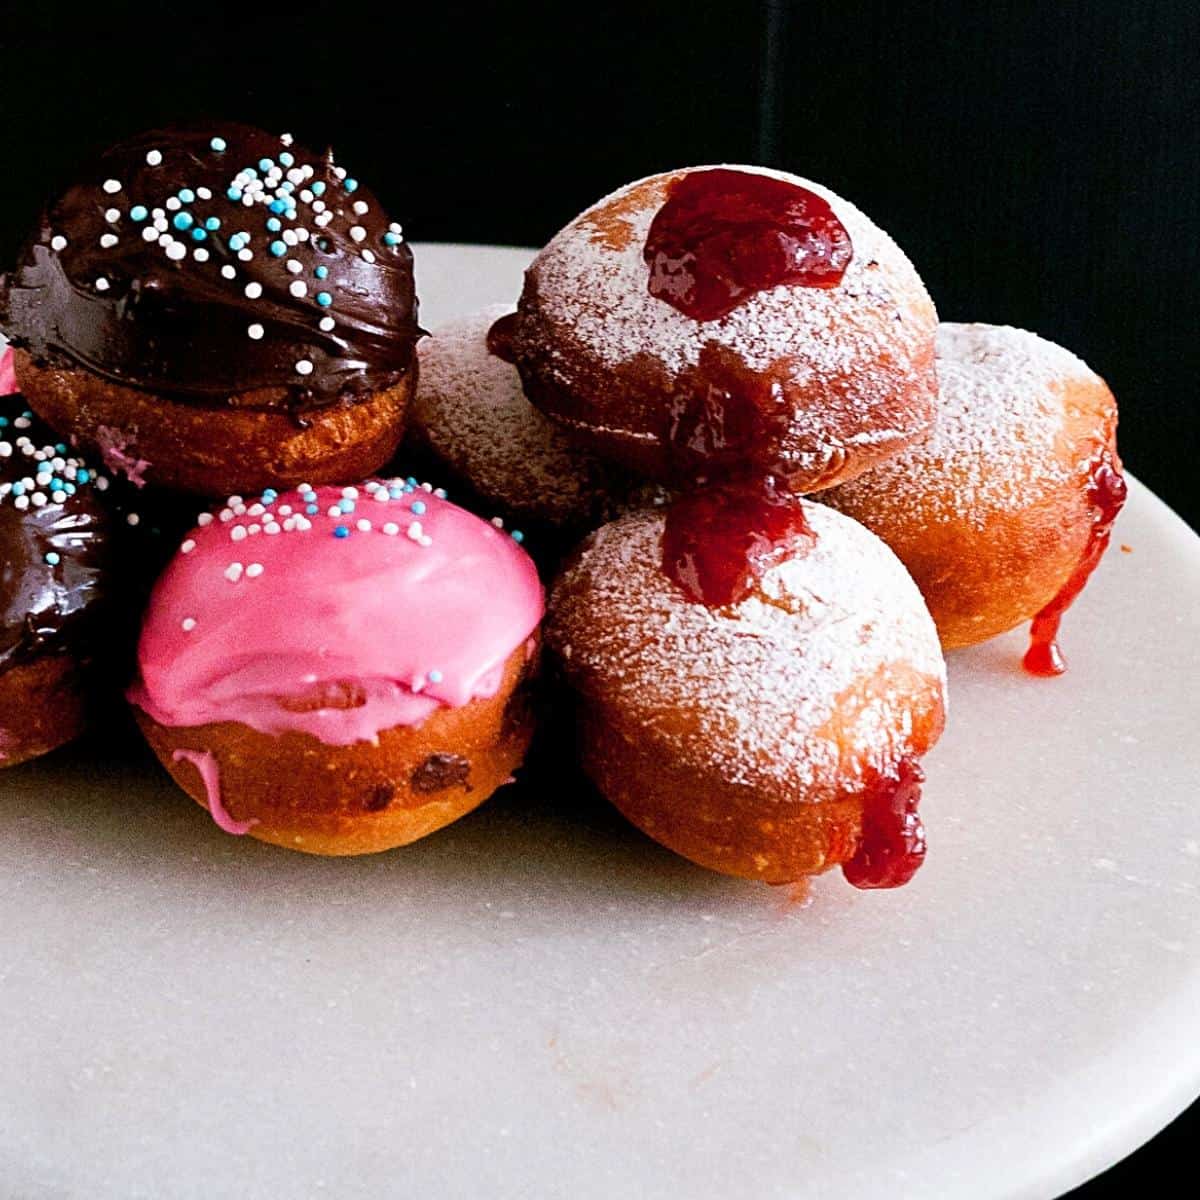 Jam doughnuts on a table.